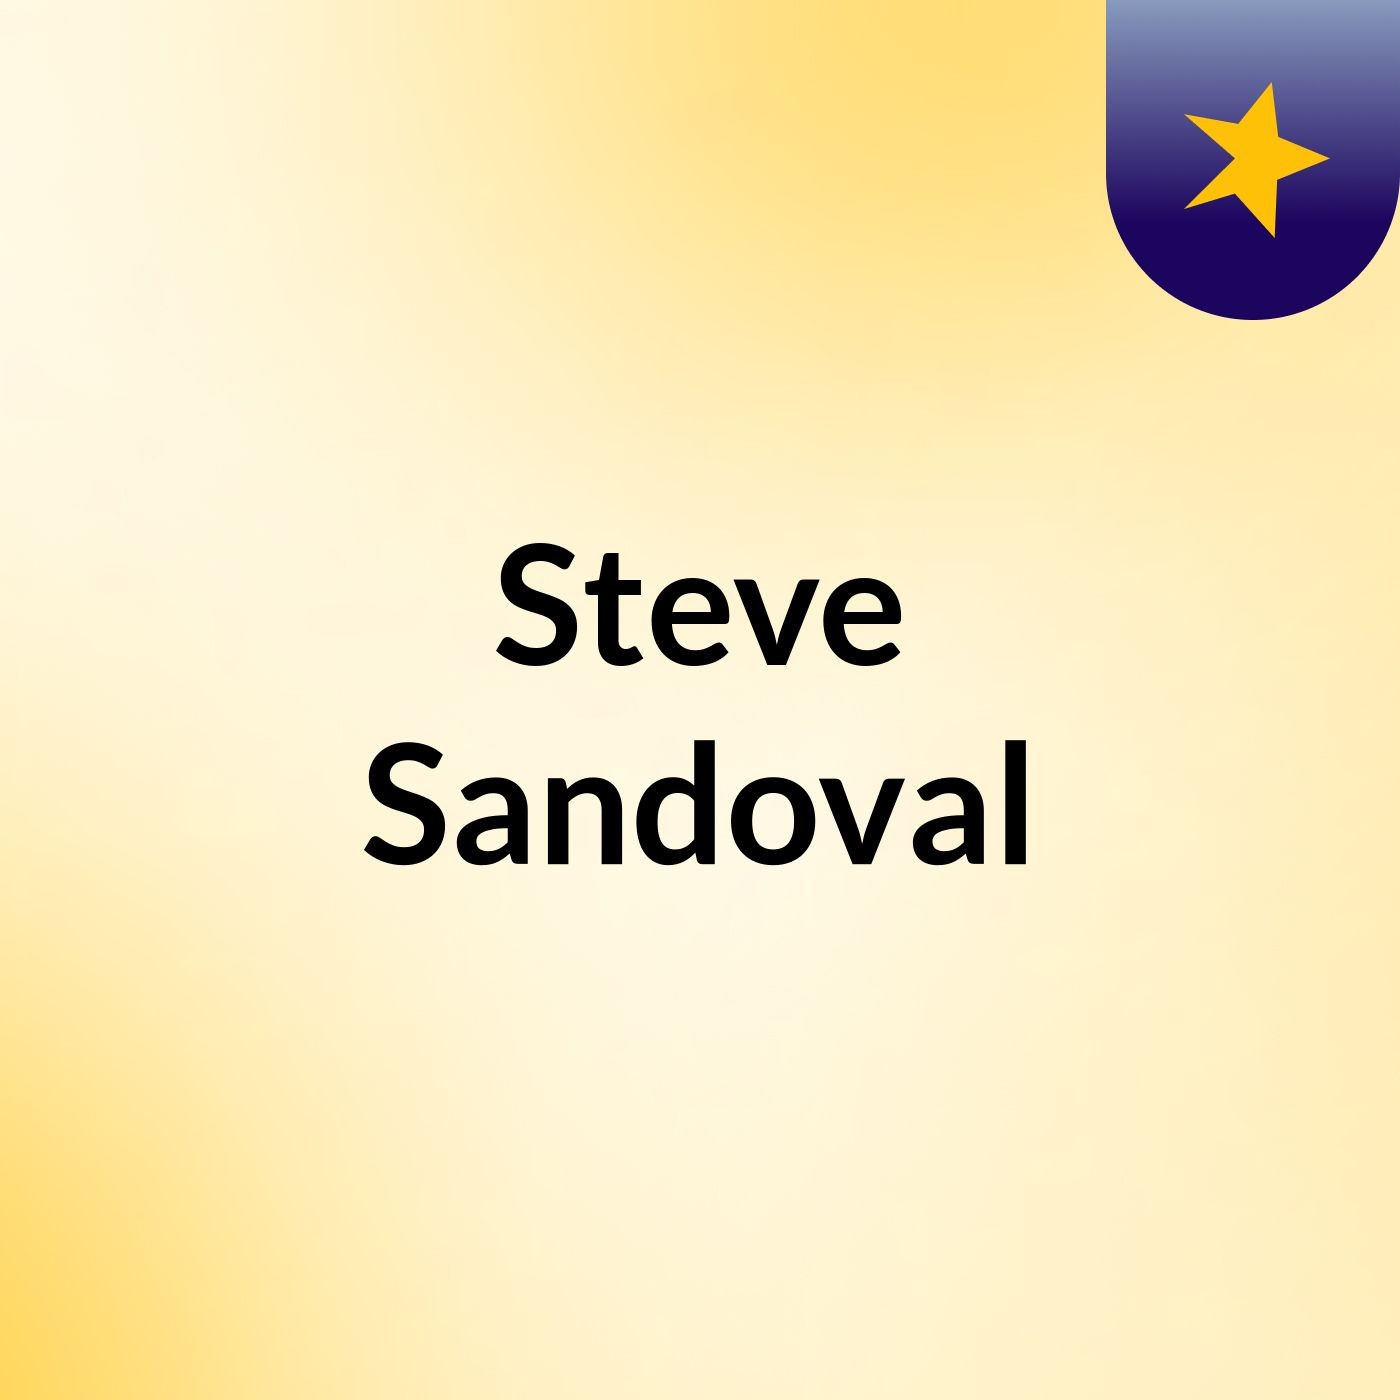 Steve Sandoval